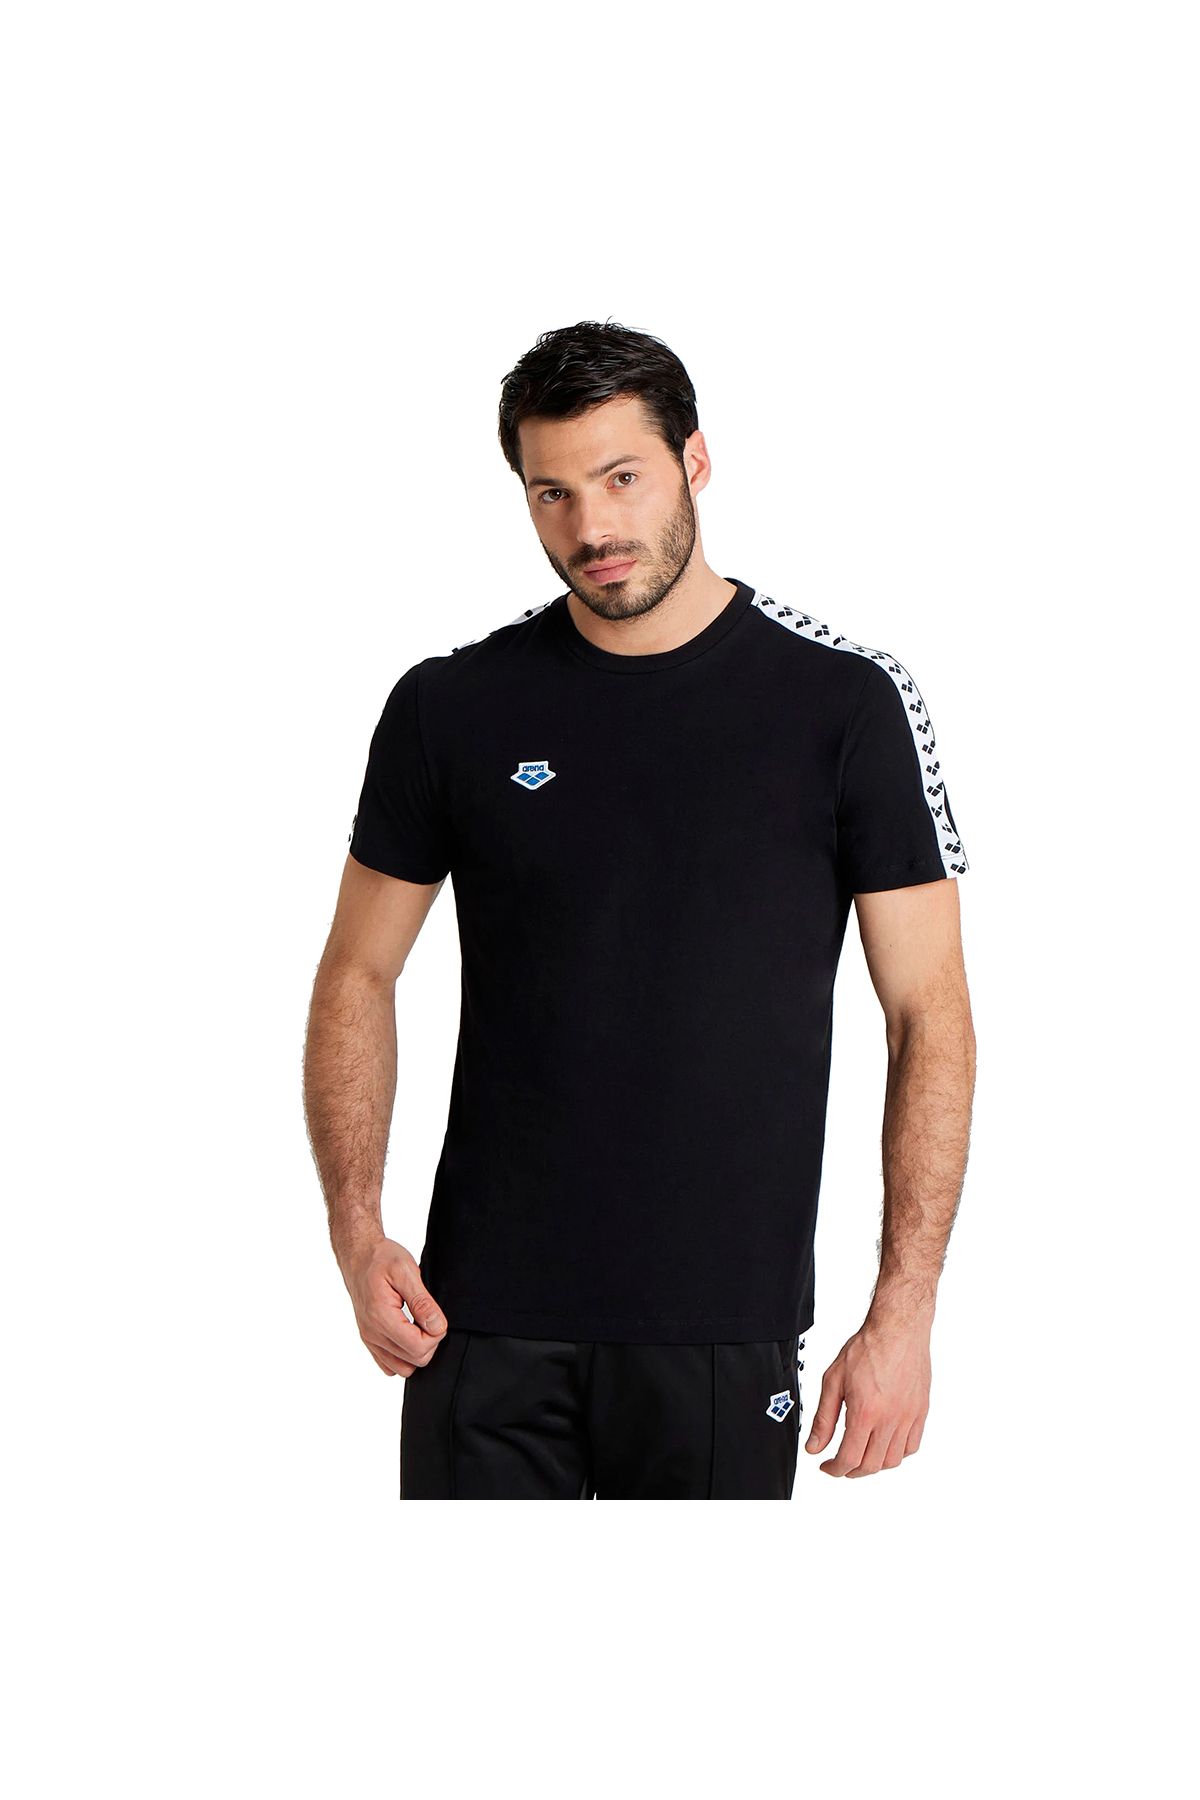 Arena Team Erkek Siyah Günlük Stil T-shirt 002701501